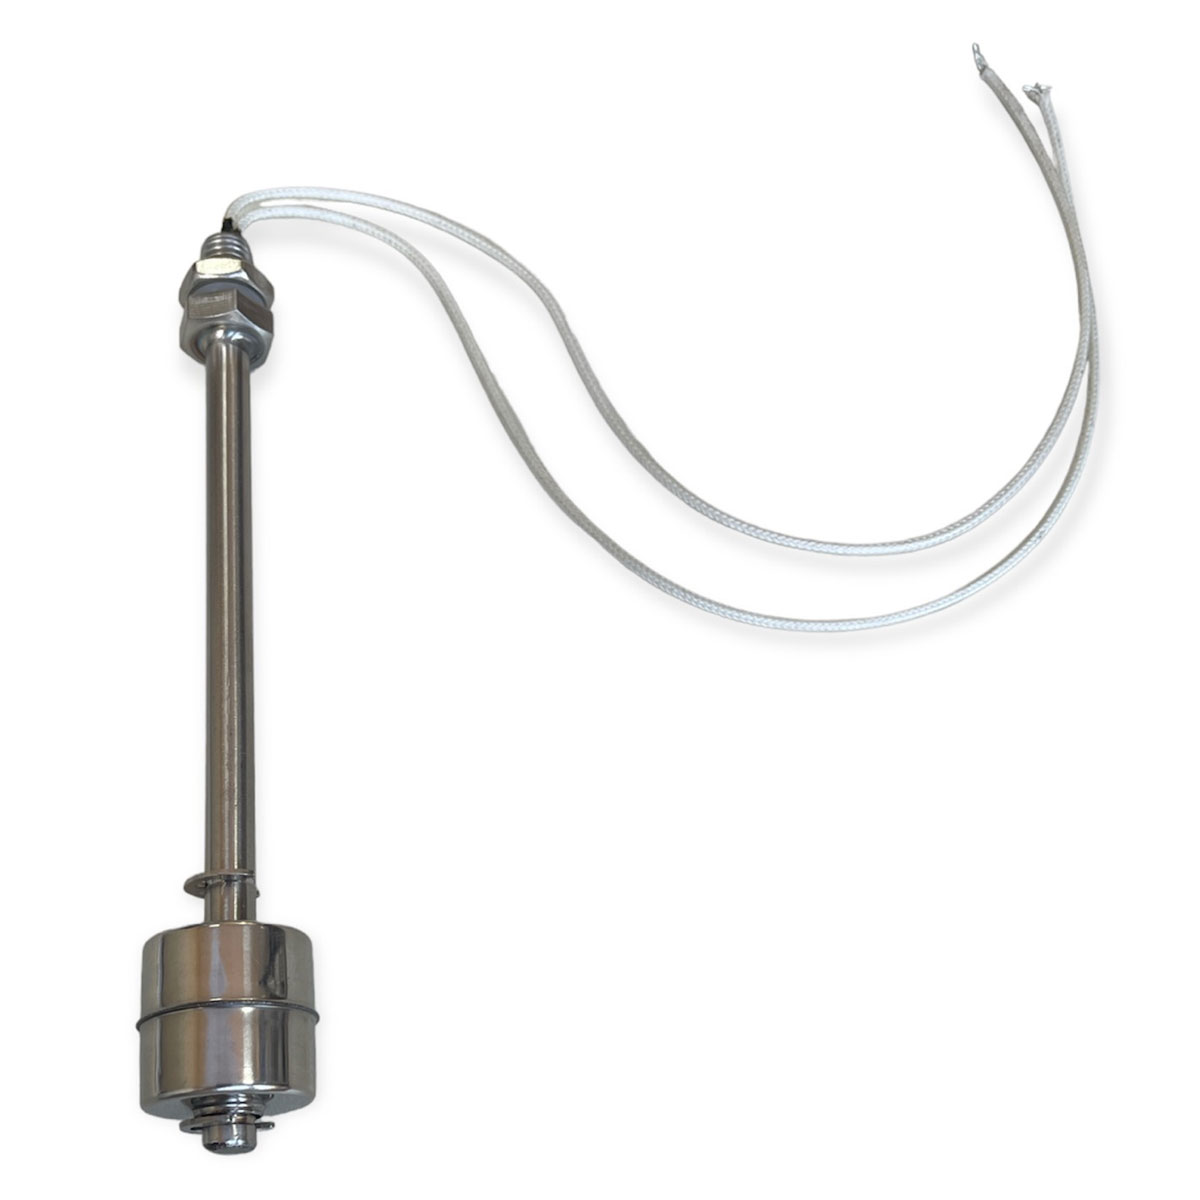 Sensor de Nível / Chave boia em aço inox para medir nível de líquidos 150mm de comprimento